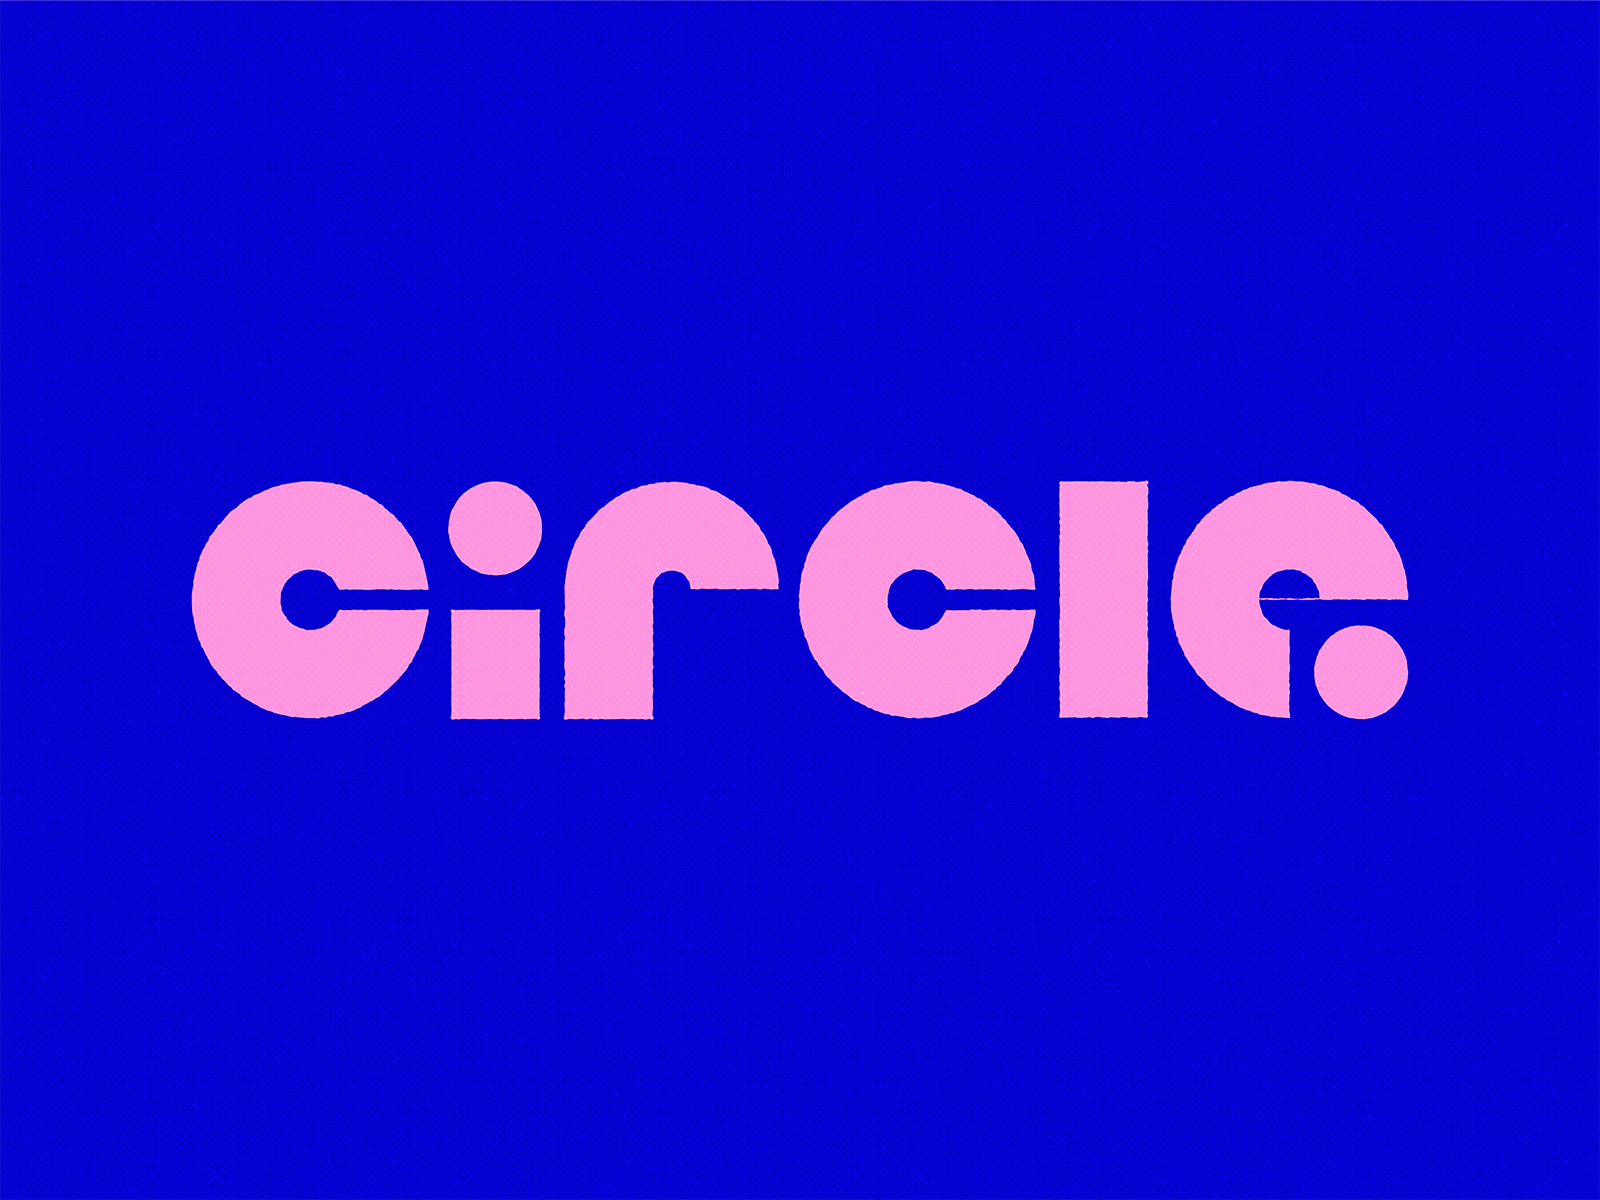 [Weekly warm-up] Circle in circles